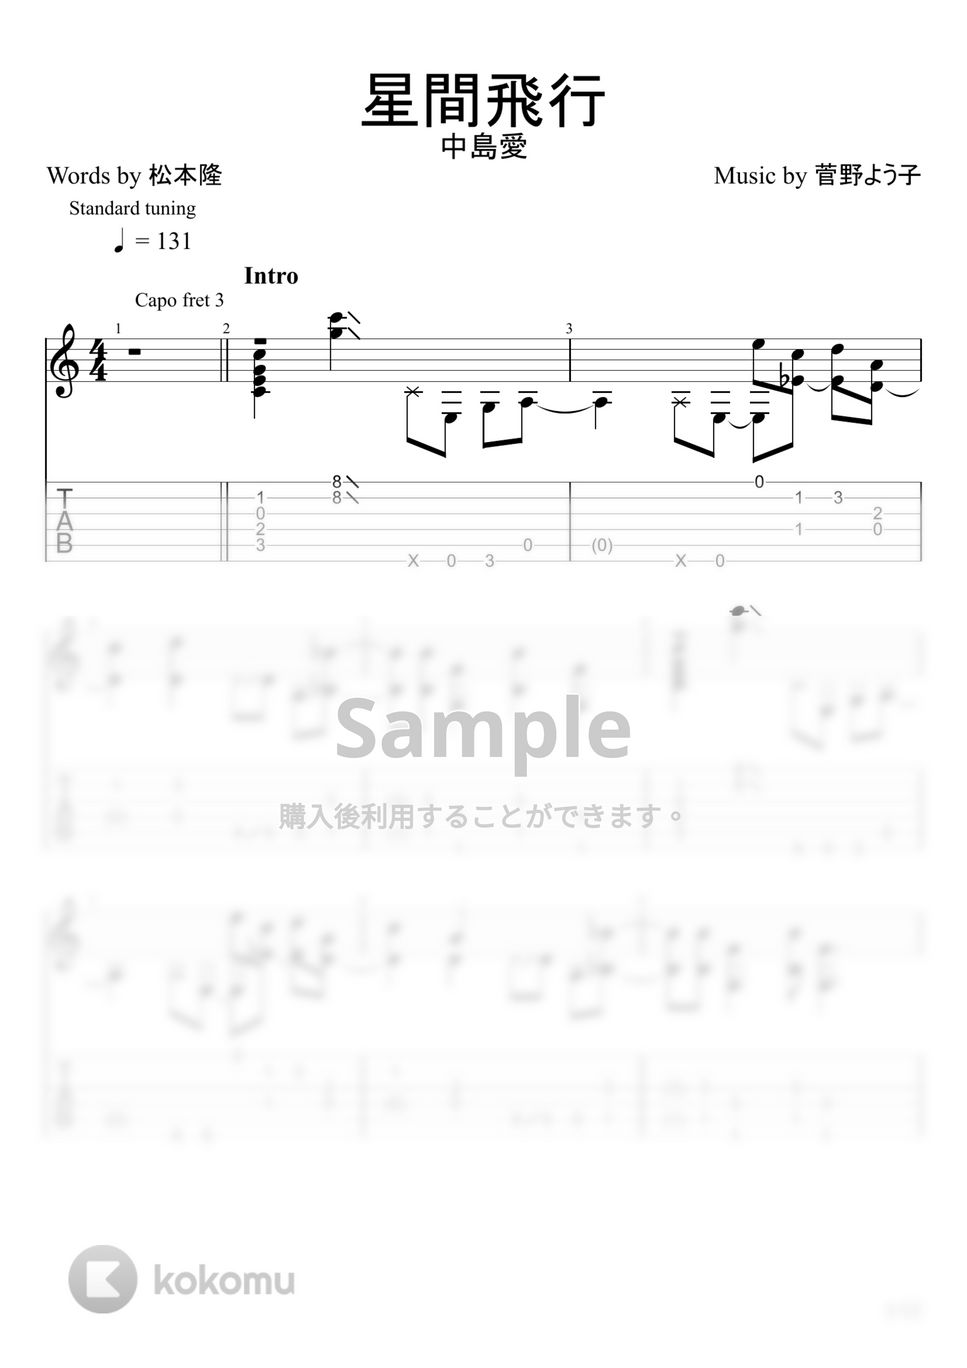 中島愛 - 星間飛行 (ソロギター) by u3danchou